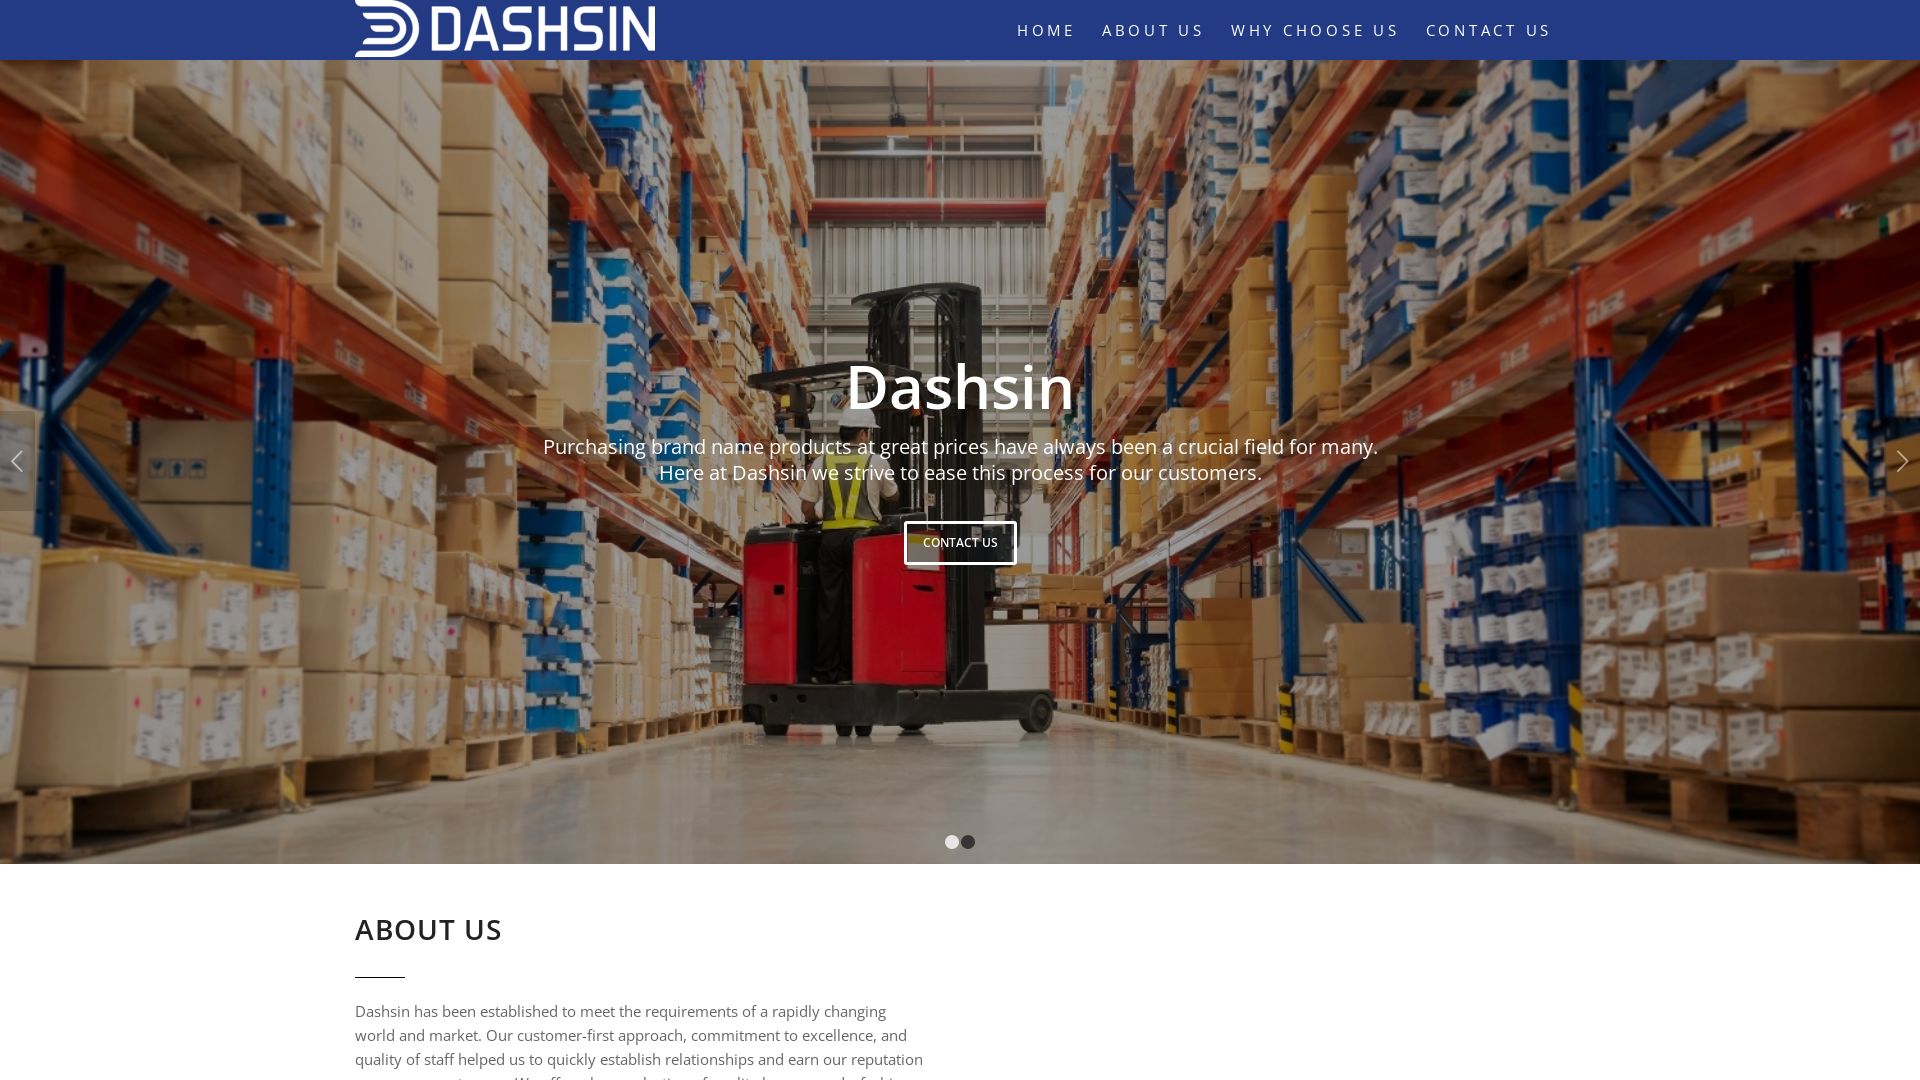 Website status dashsin.com is   ONLINE